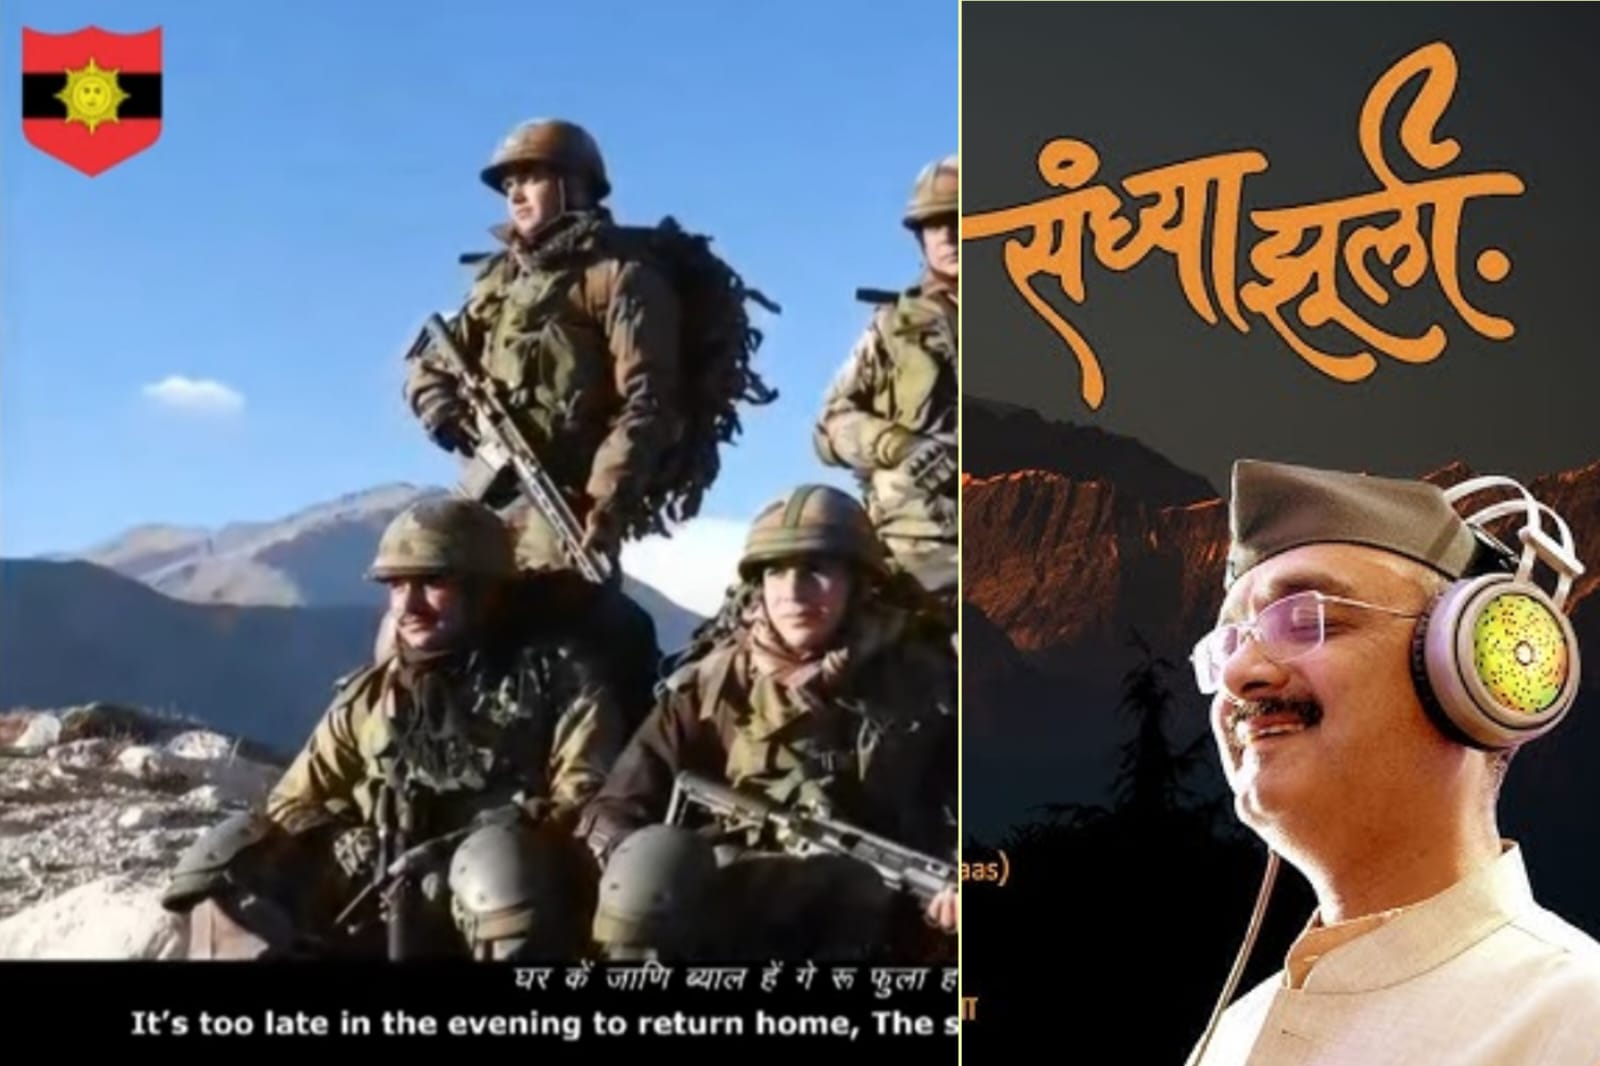 वरिष्ठ पत्रकार और लोकगायक अजय ढोंडियाल का गाया गया गीत ‘के संध्या झूली’ को भारतीय सेना ने अपने सोशल मीडिया प्लेटफार्म पर किया शेयर